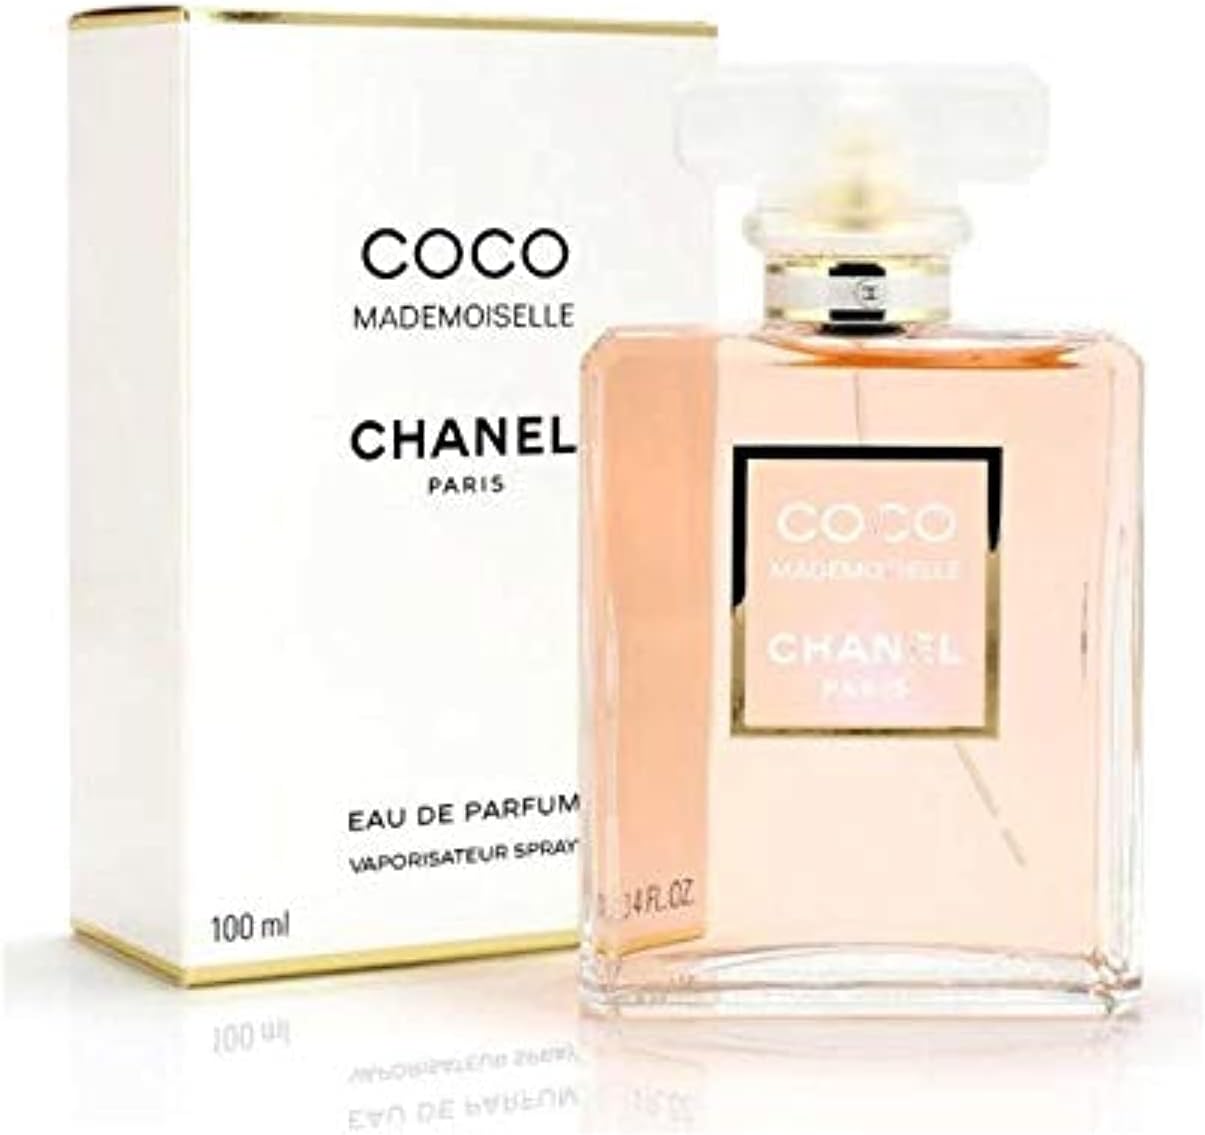 ادکلن زنانه شنل مدل Chanel CoCo Mademoiselle 100 ml - ارسال 10 الی 15 روز کاری